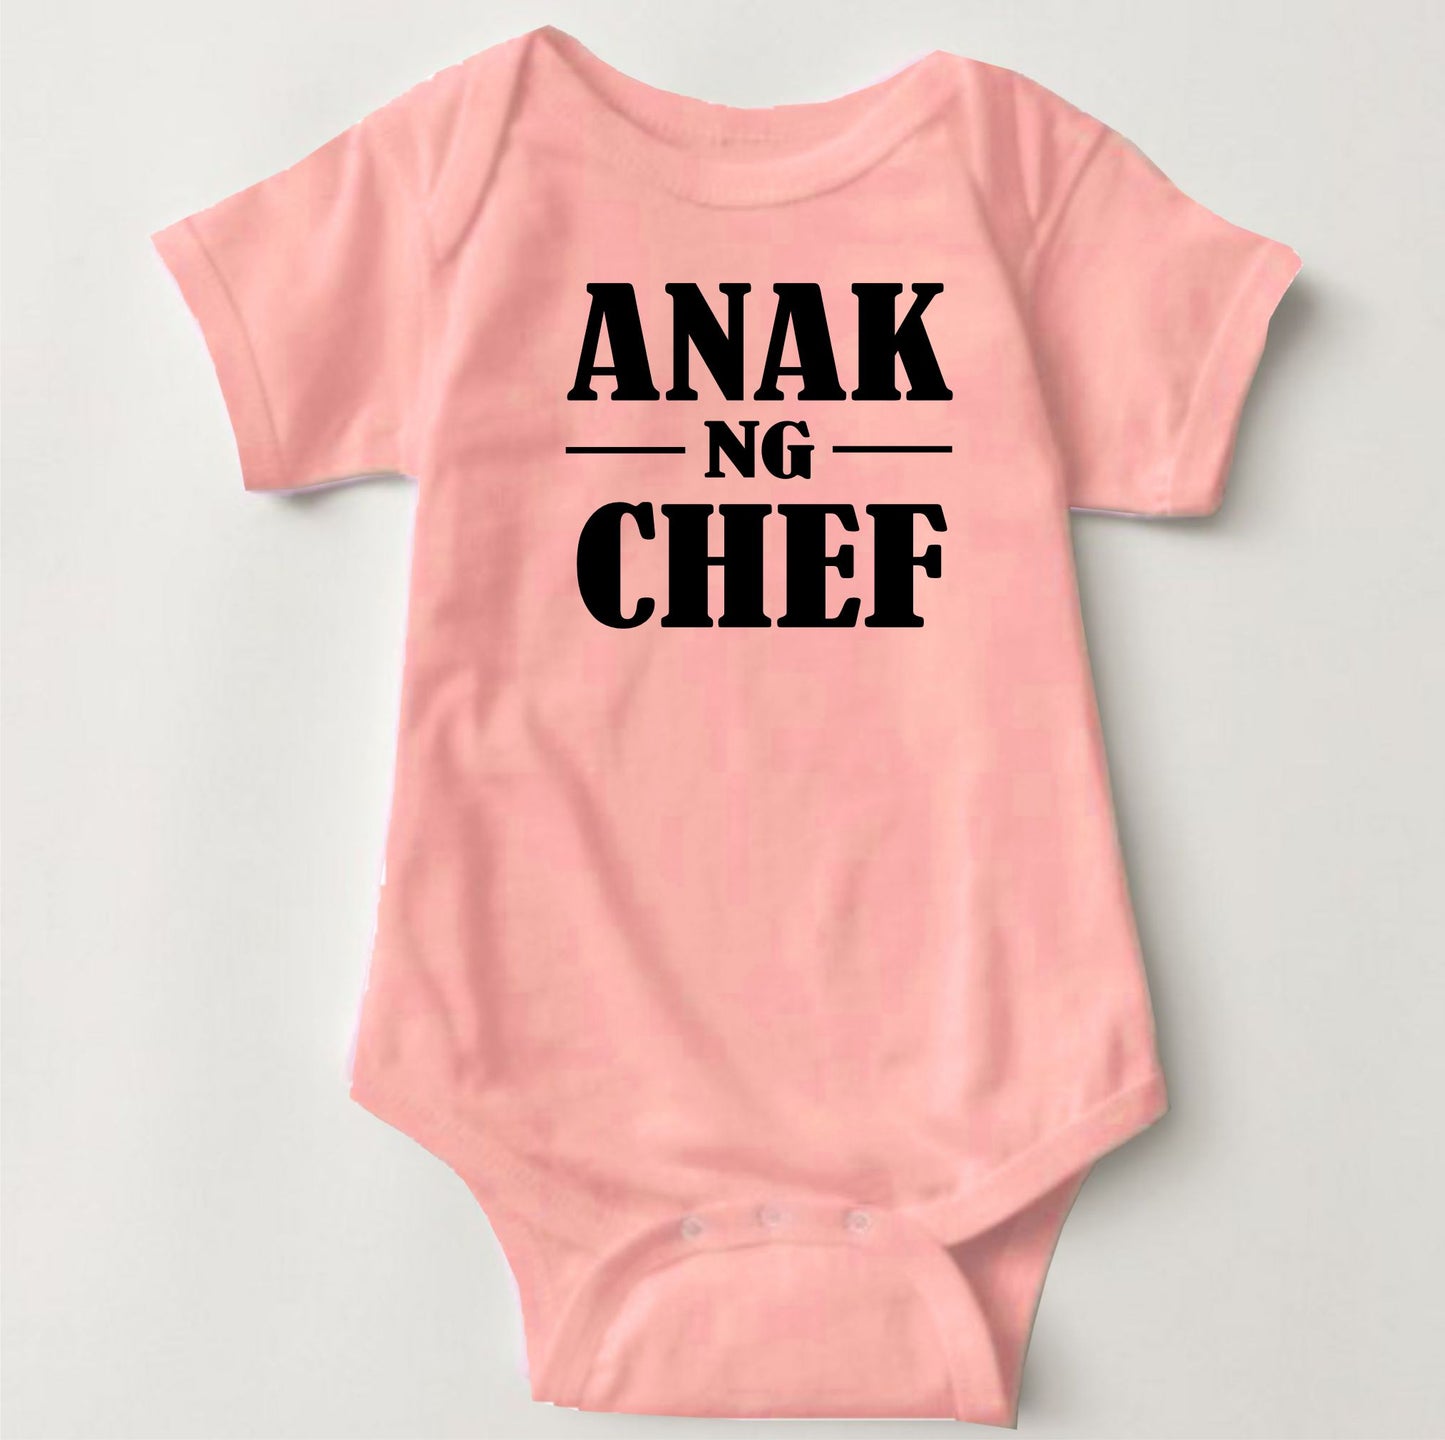 Baby Statement Onesies - Anak ng Chef